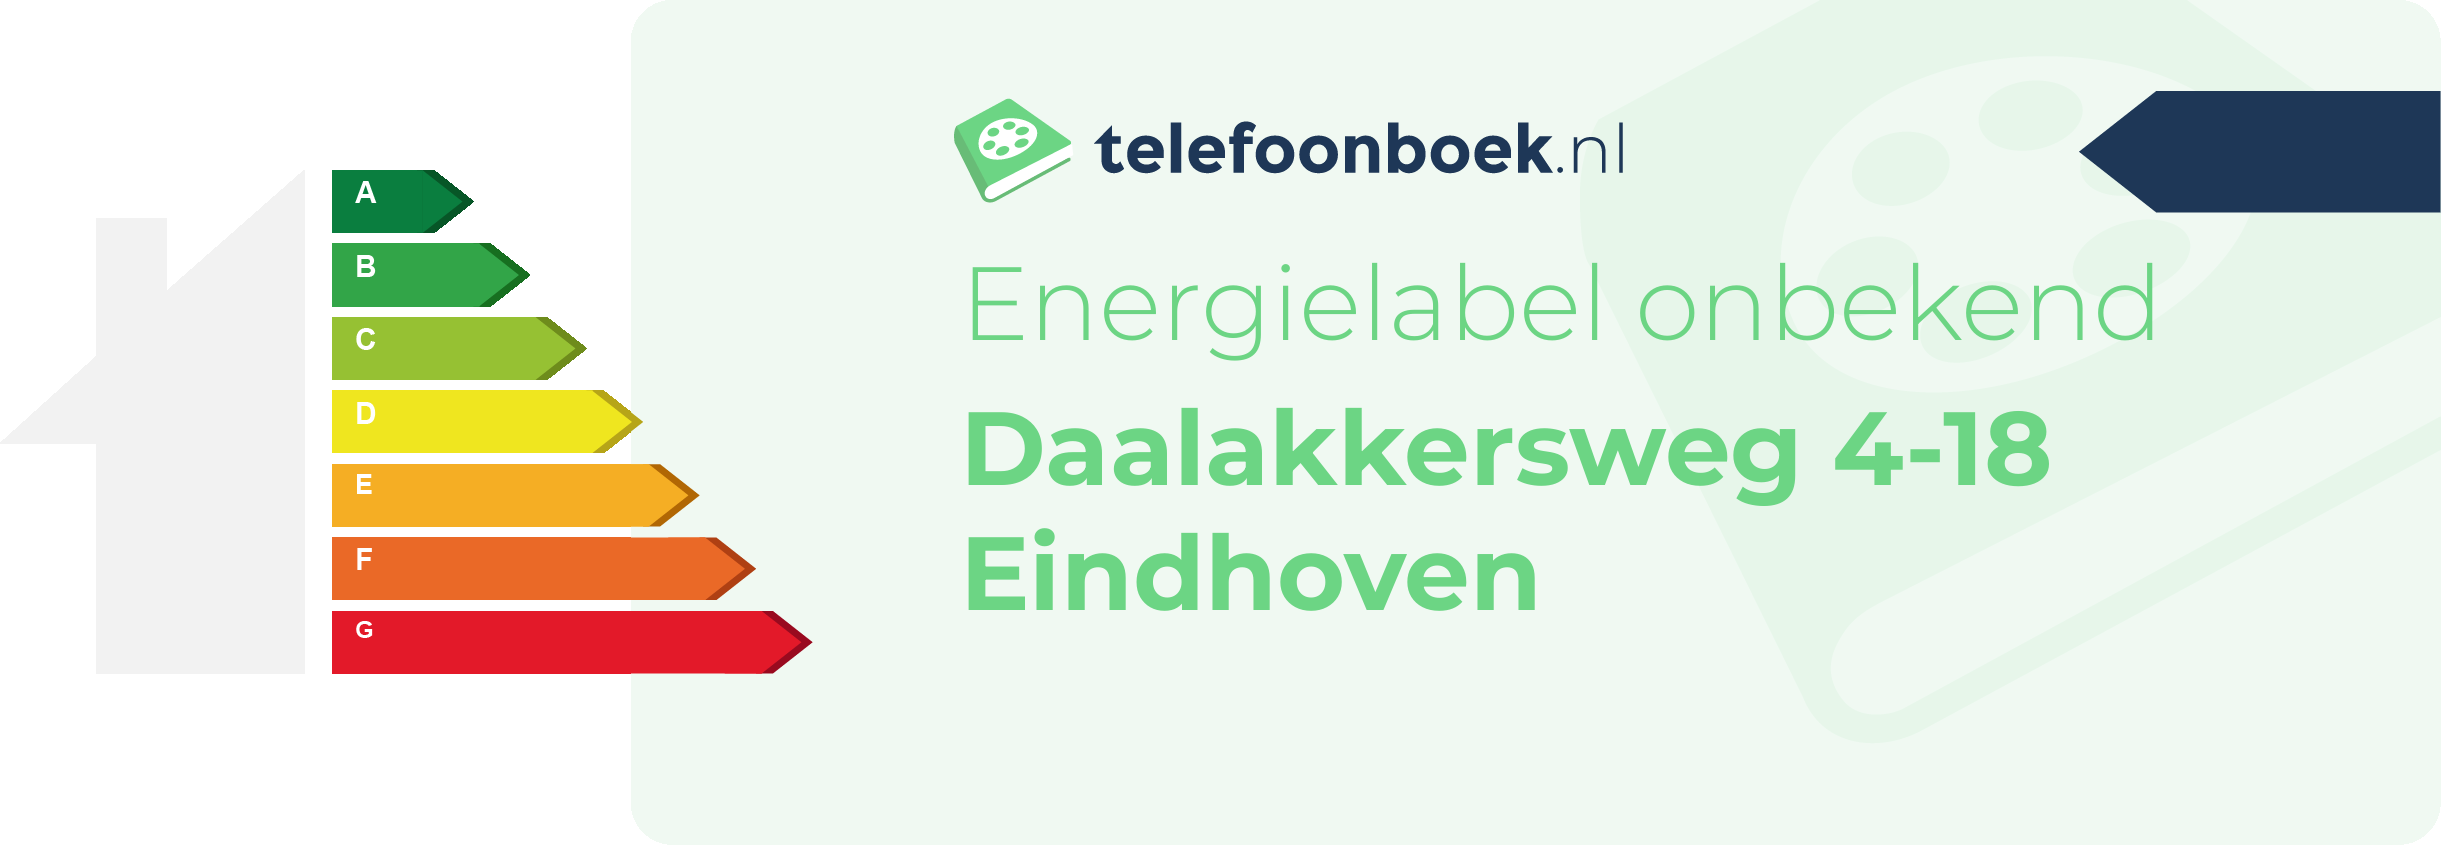 Energielabel Daalakkersweg 4-18 Eindhoven